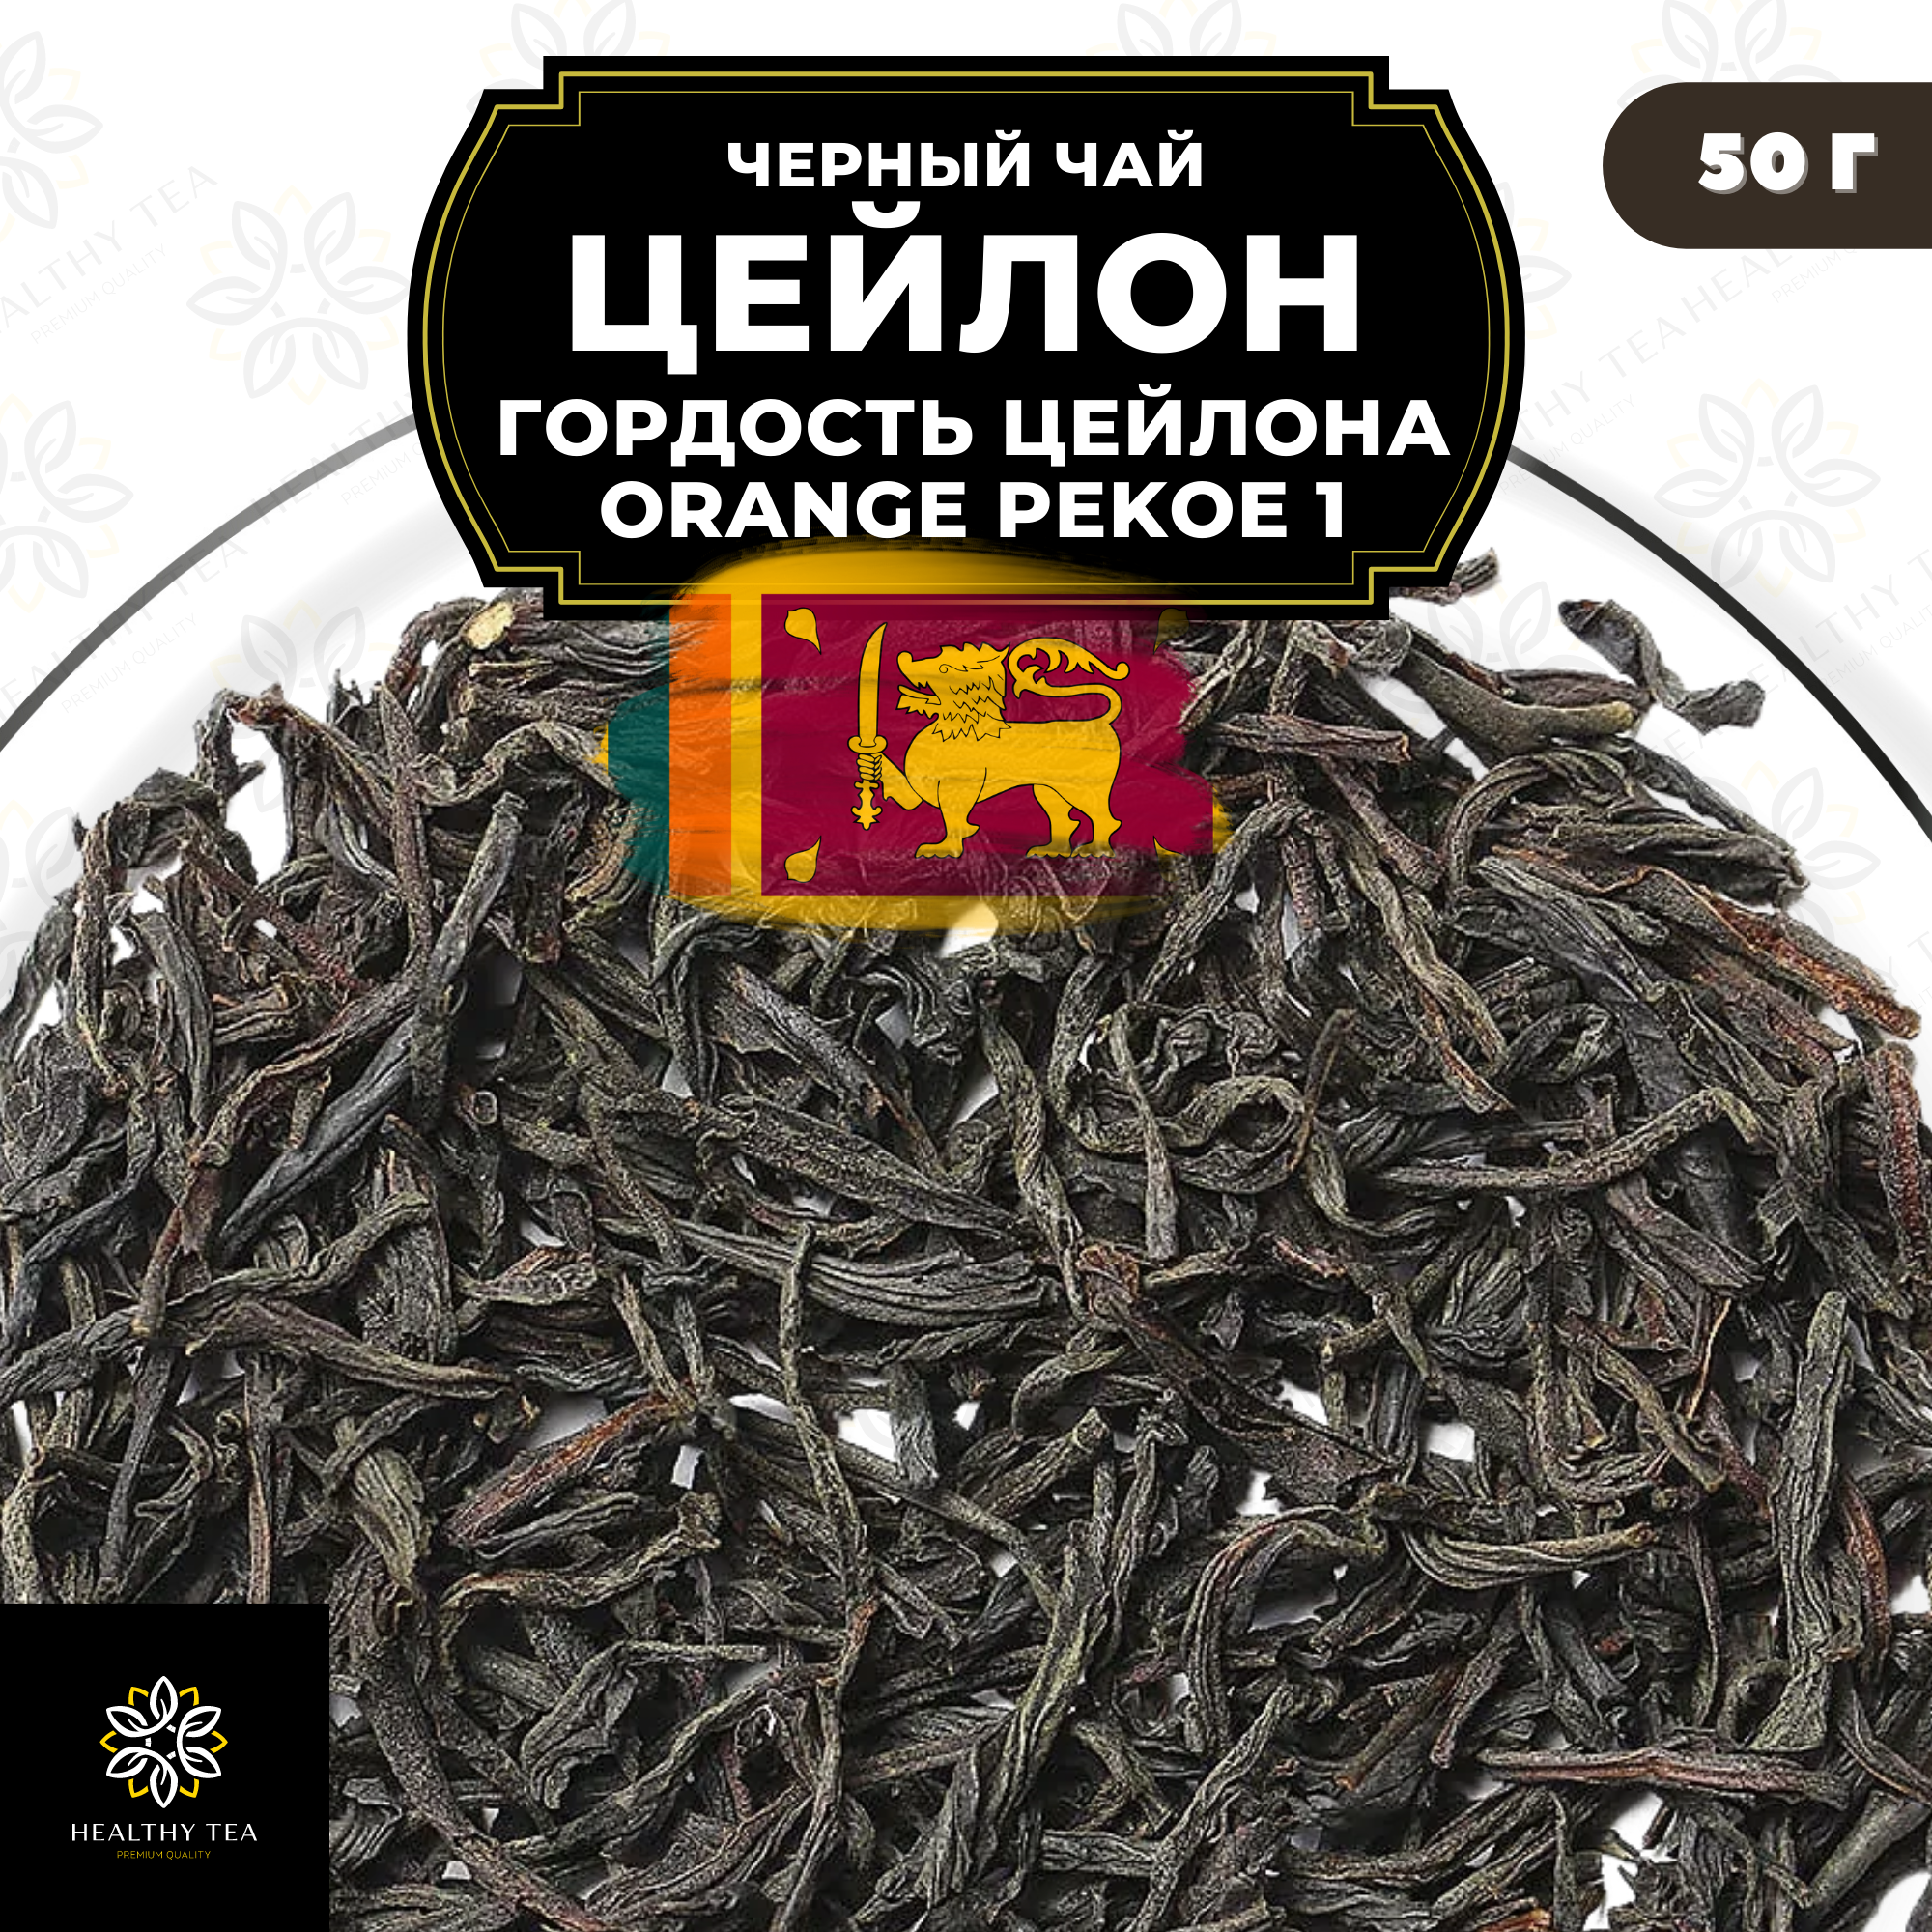 Черный листовой чай Цейлон Гордость Цейлона (ОР1) Полезный чай / HEALTHY TEA, 50 гр